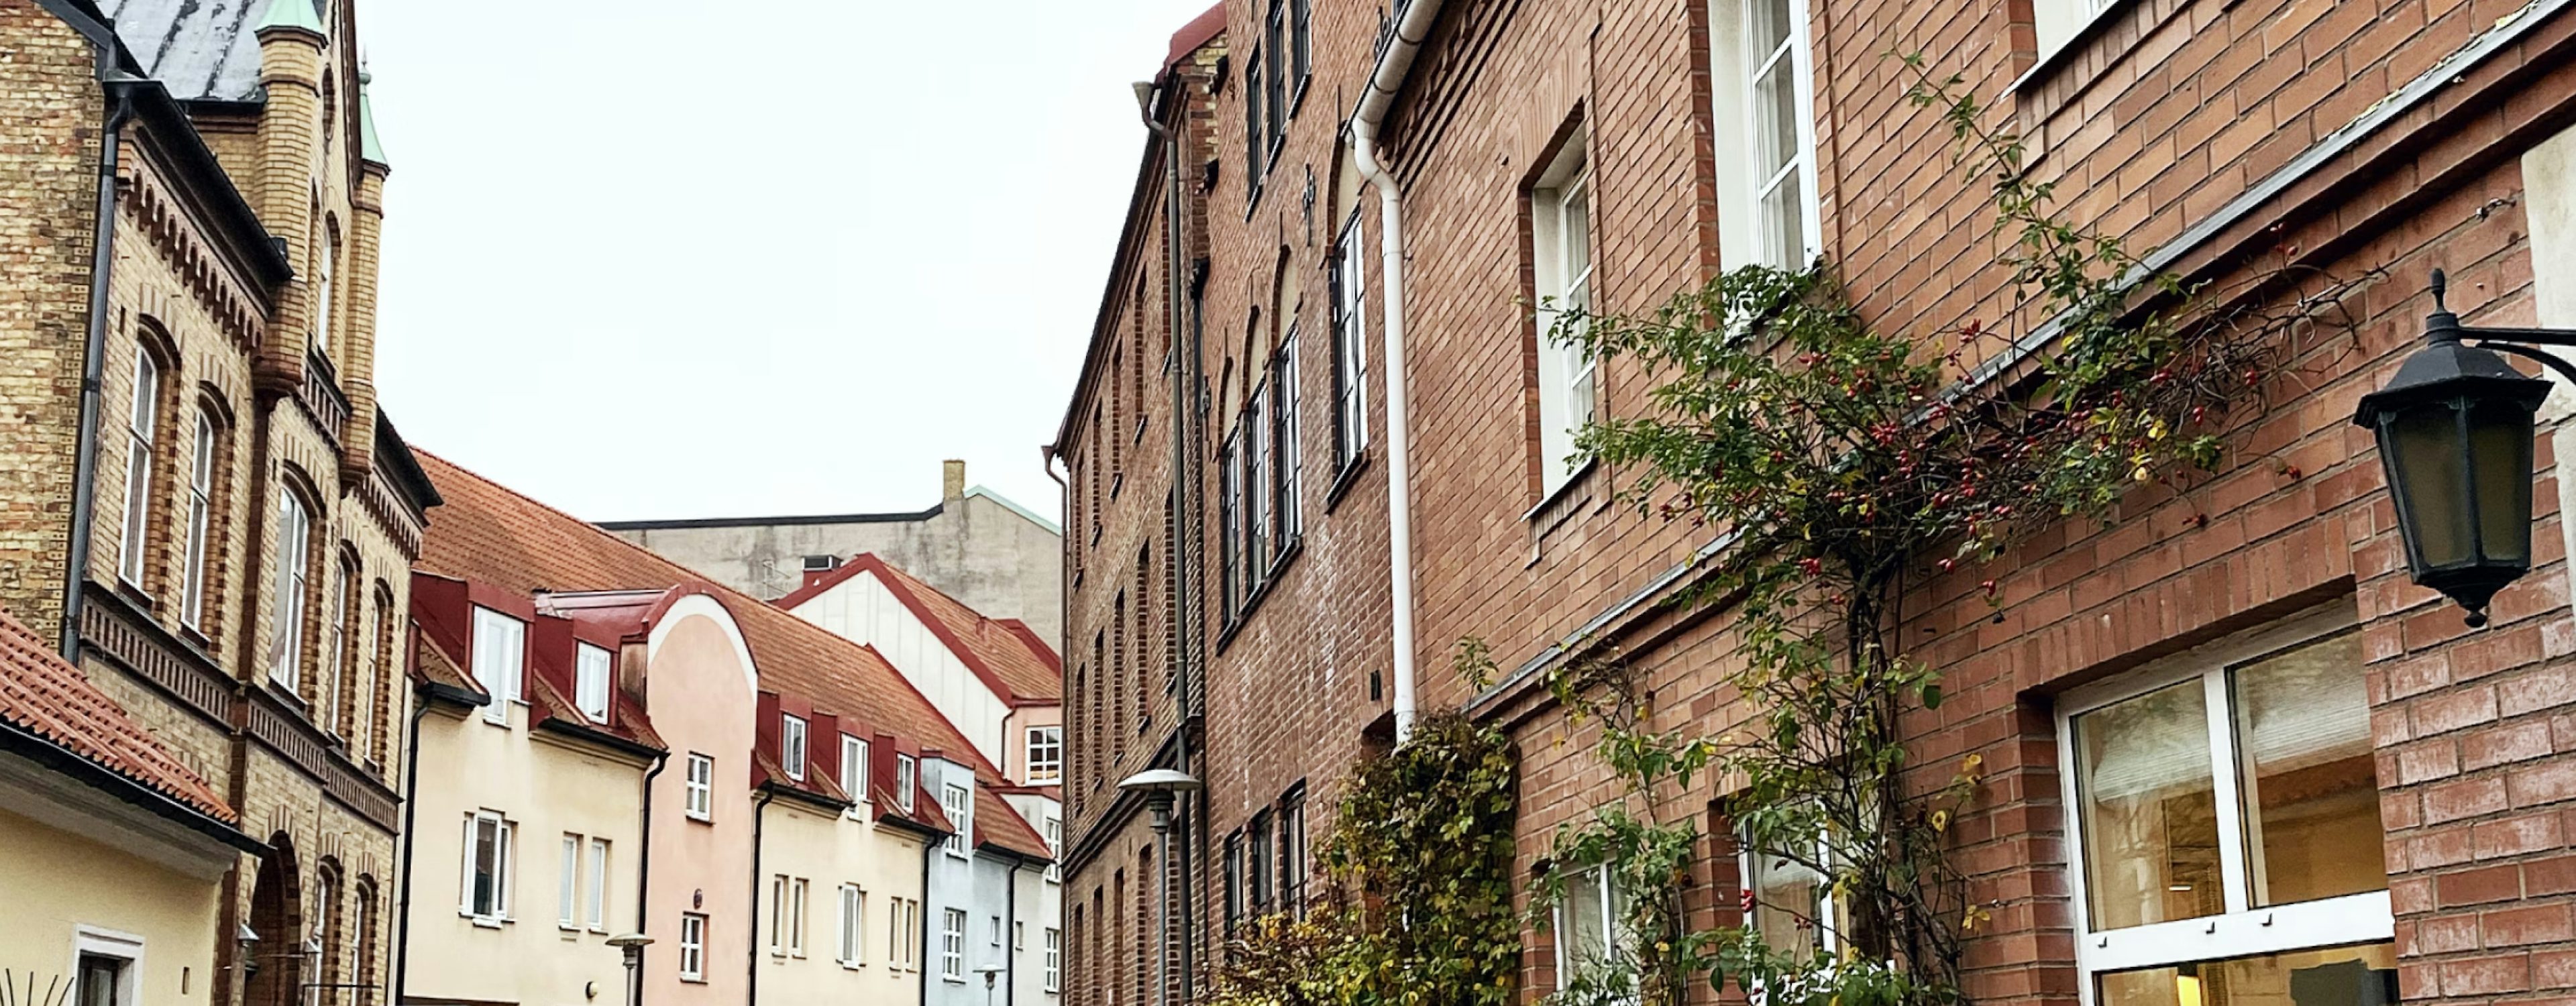 Gemytlig gata i Lund med traditionell arkitektur och gatlyktor, omgiven av mogen grönska